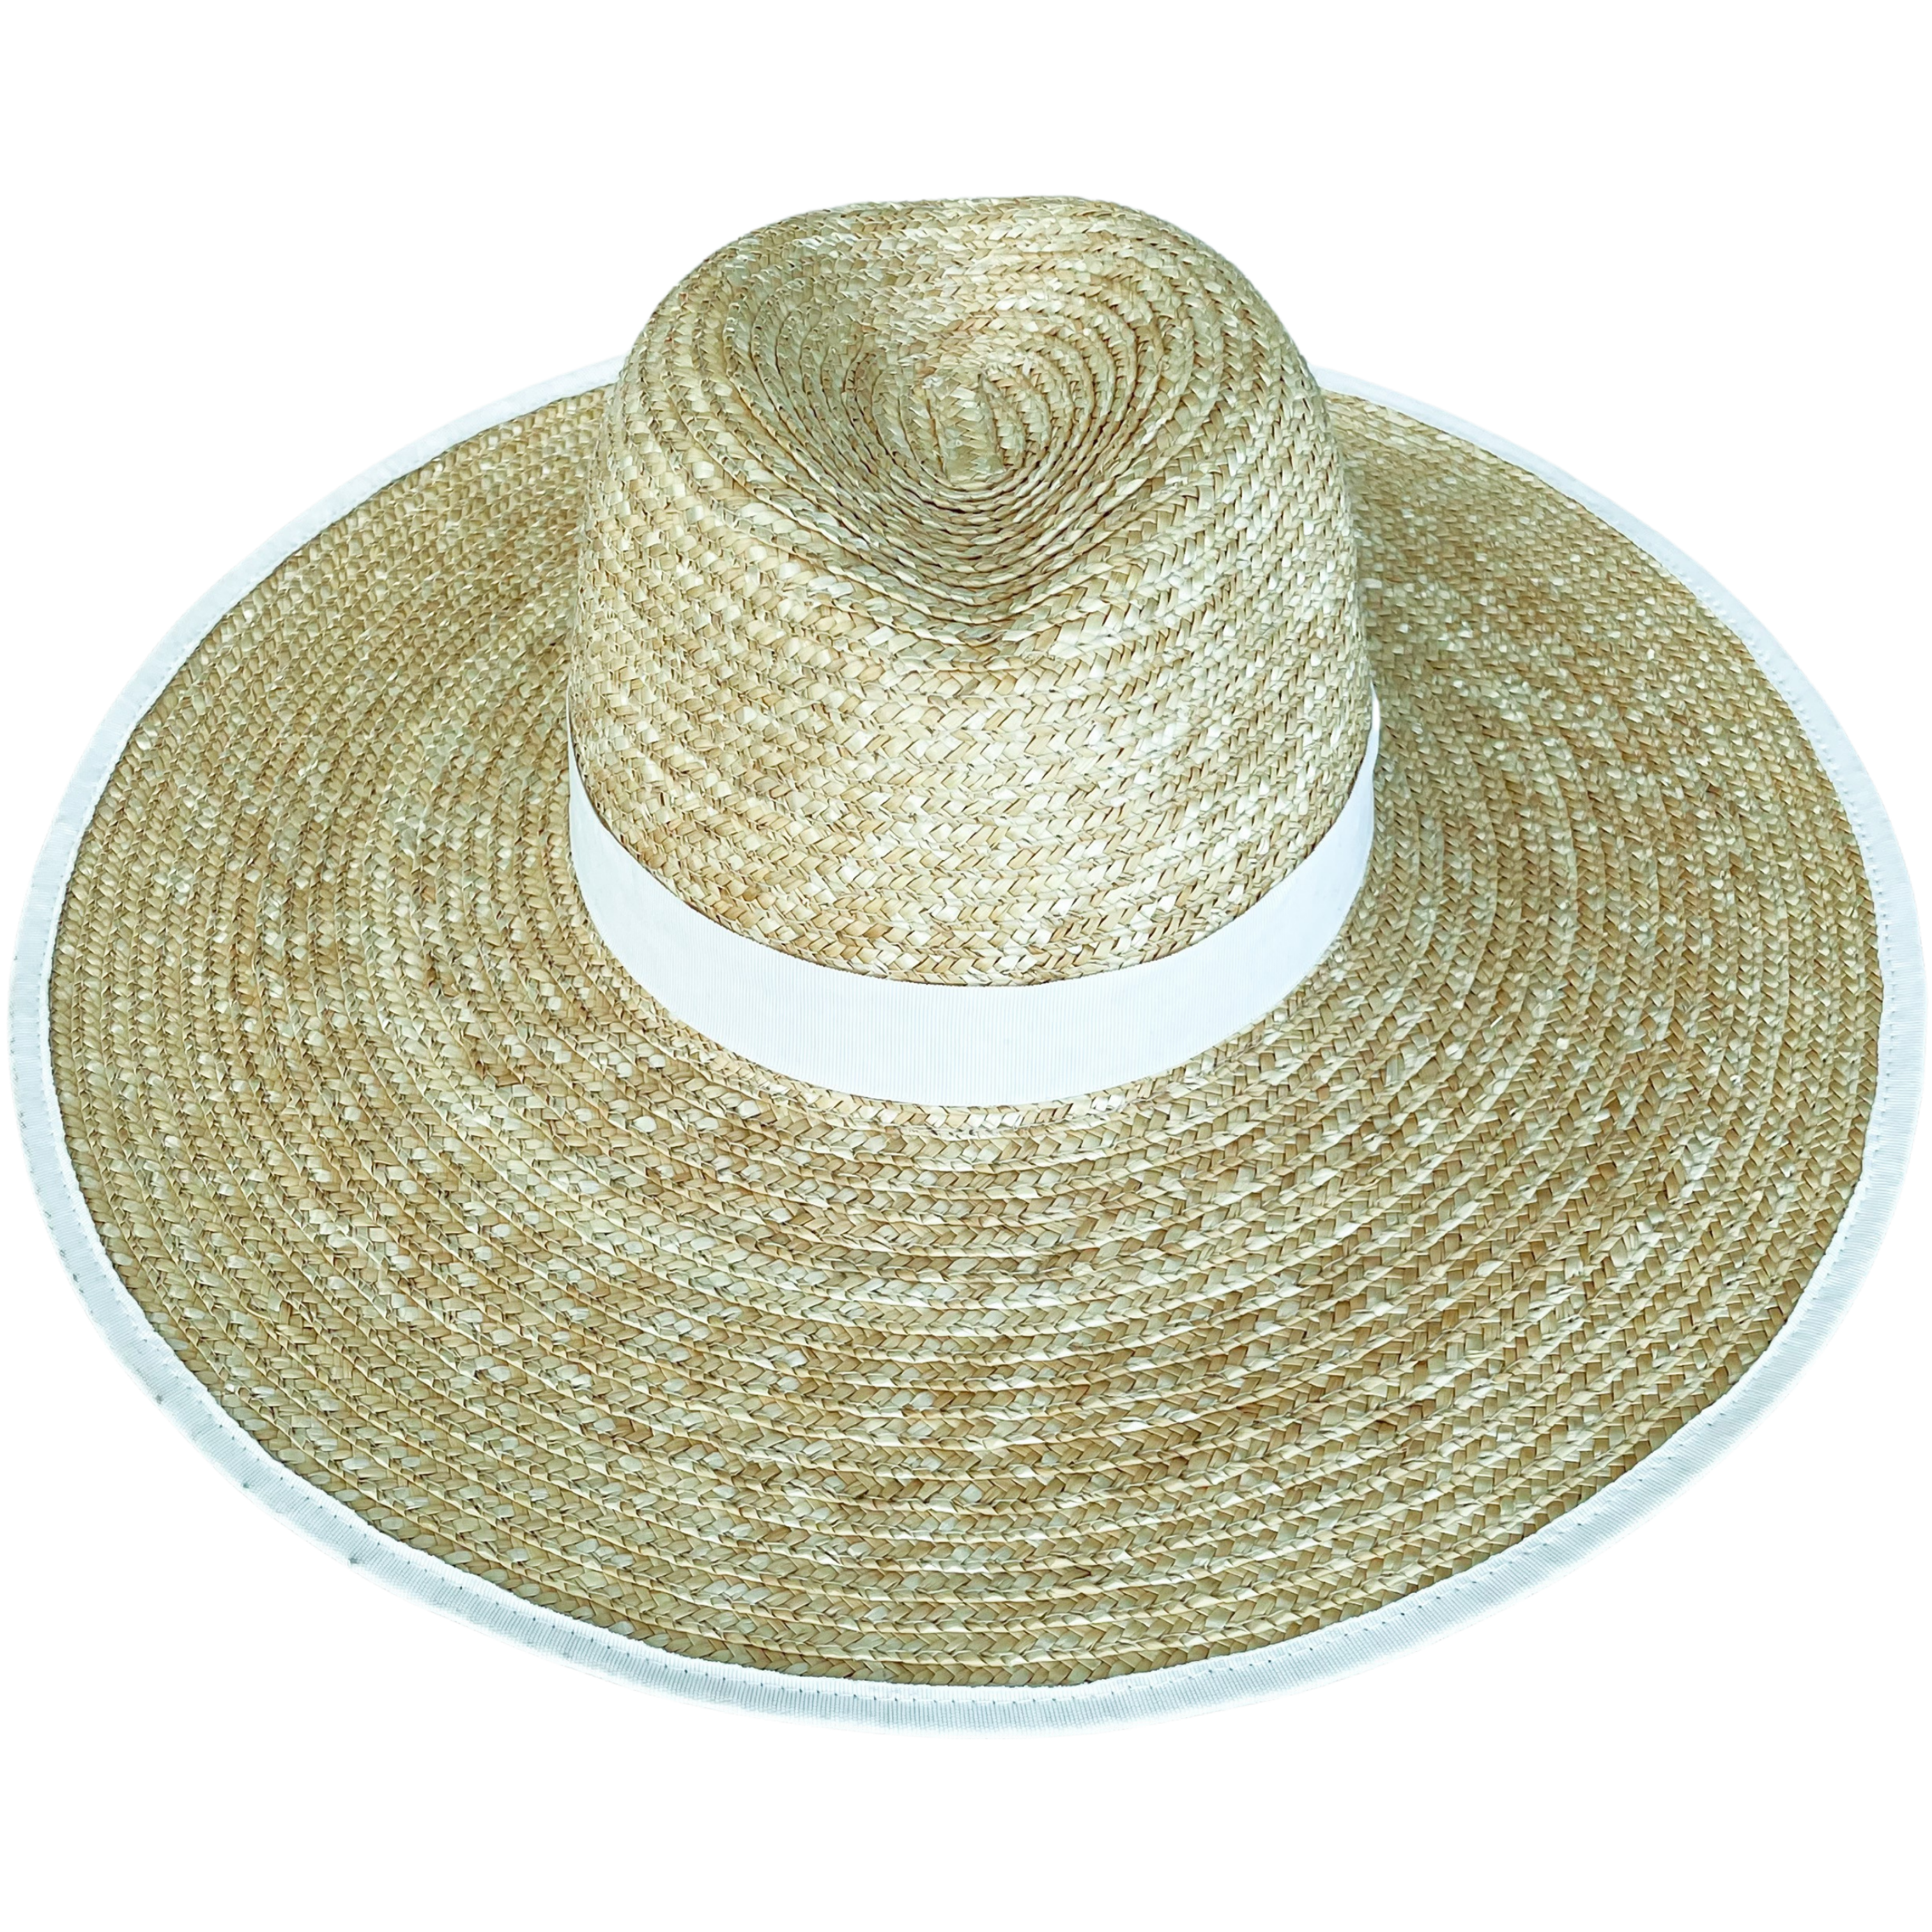 Elise fedora bridal straw hat large brim